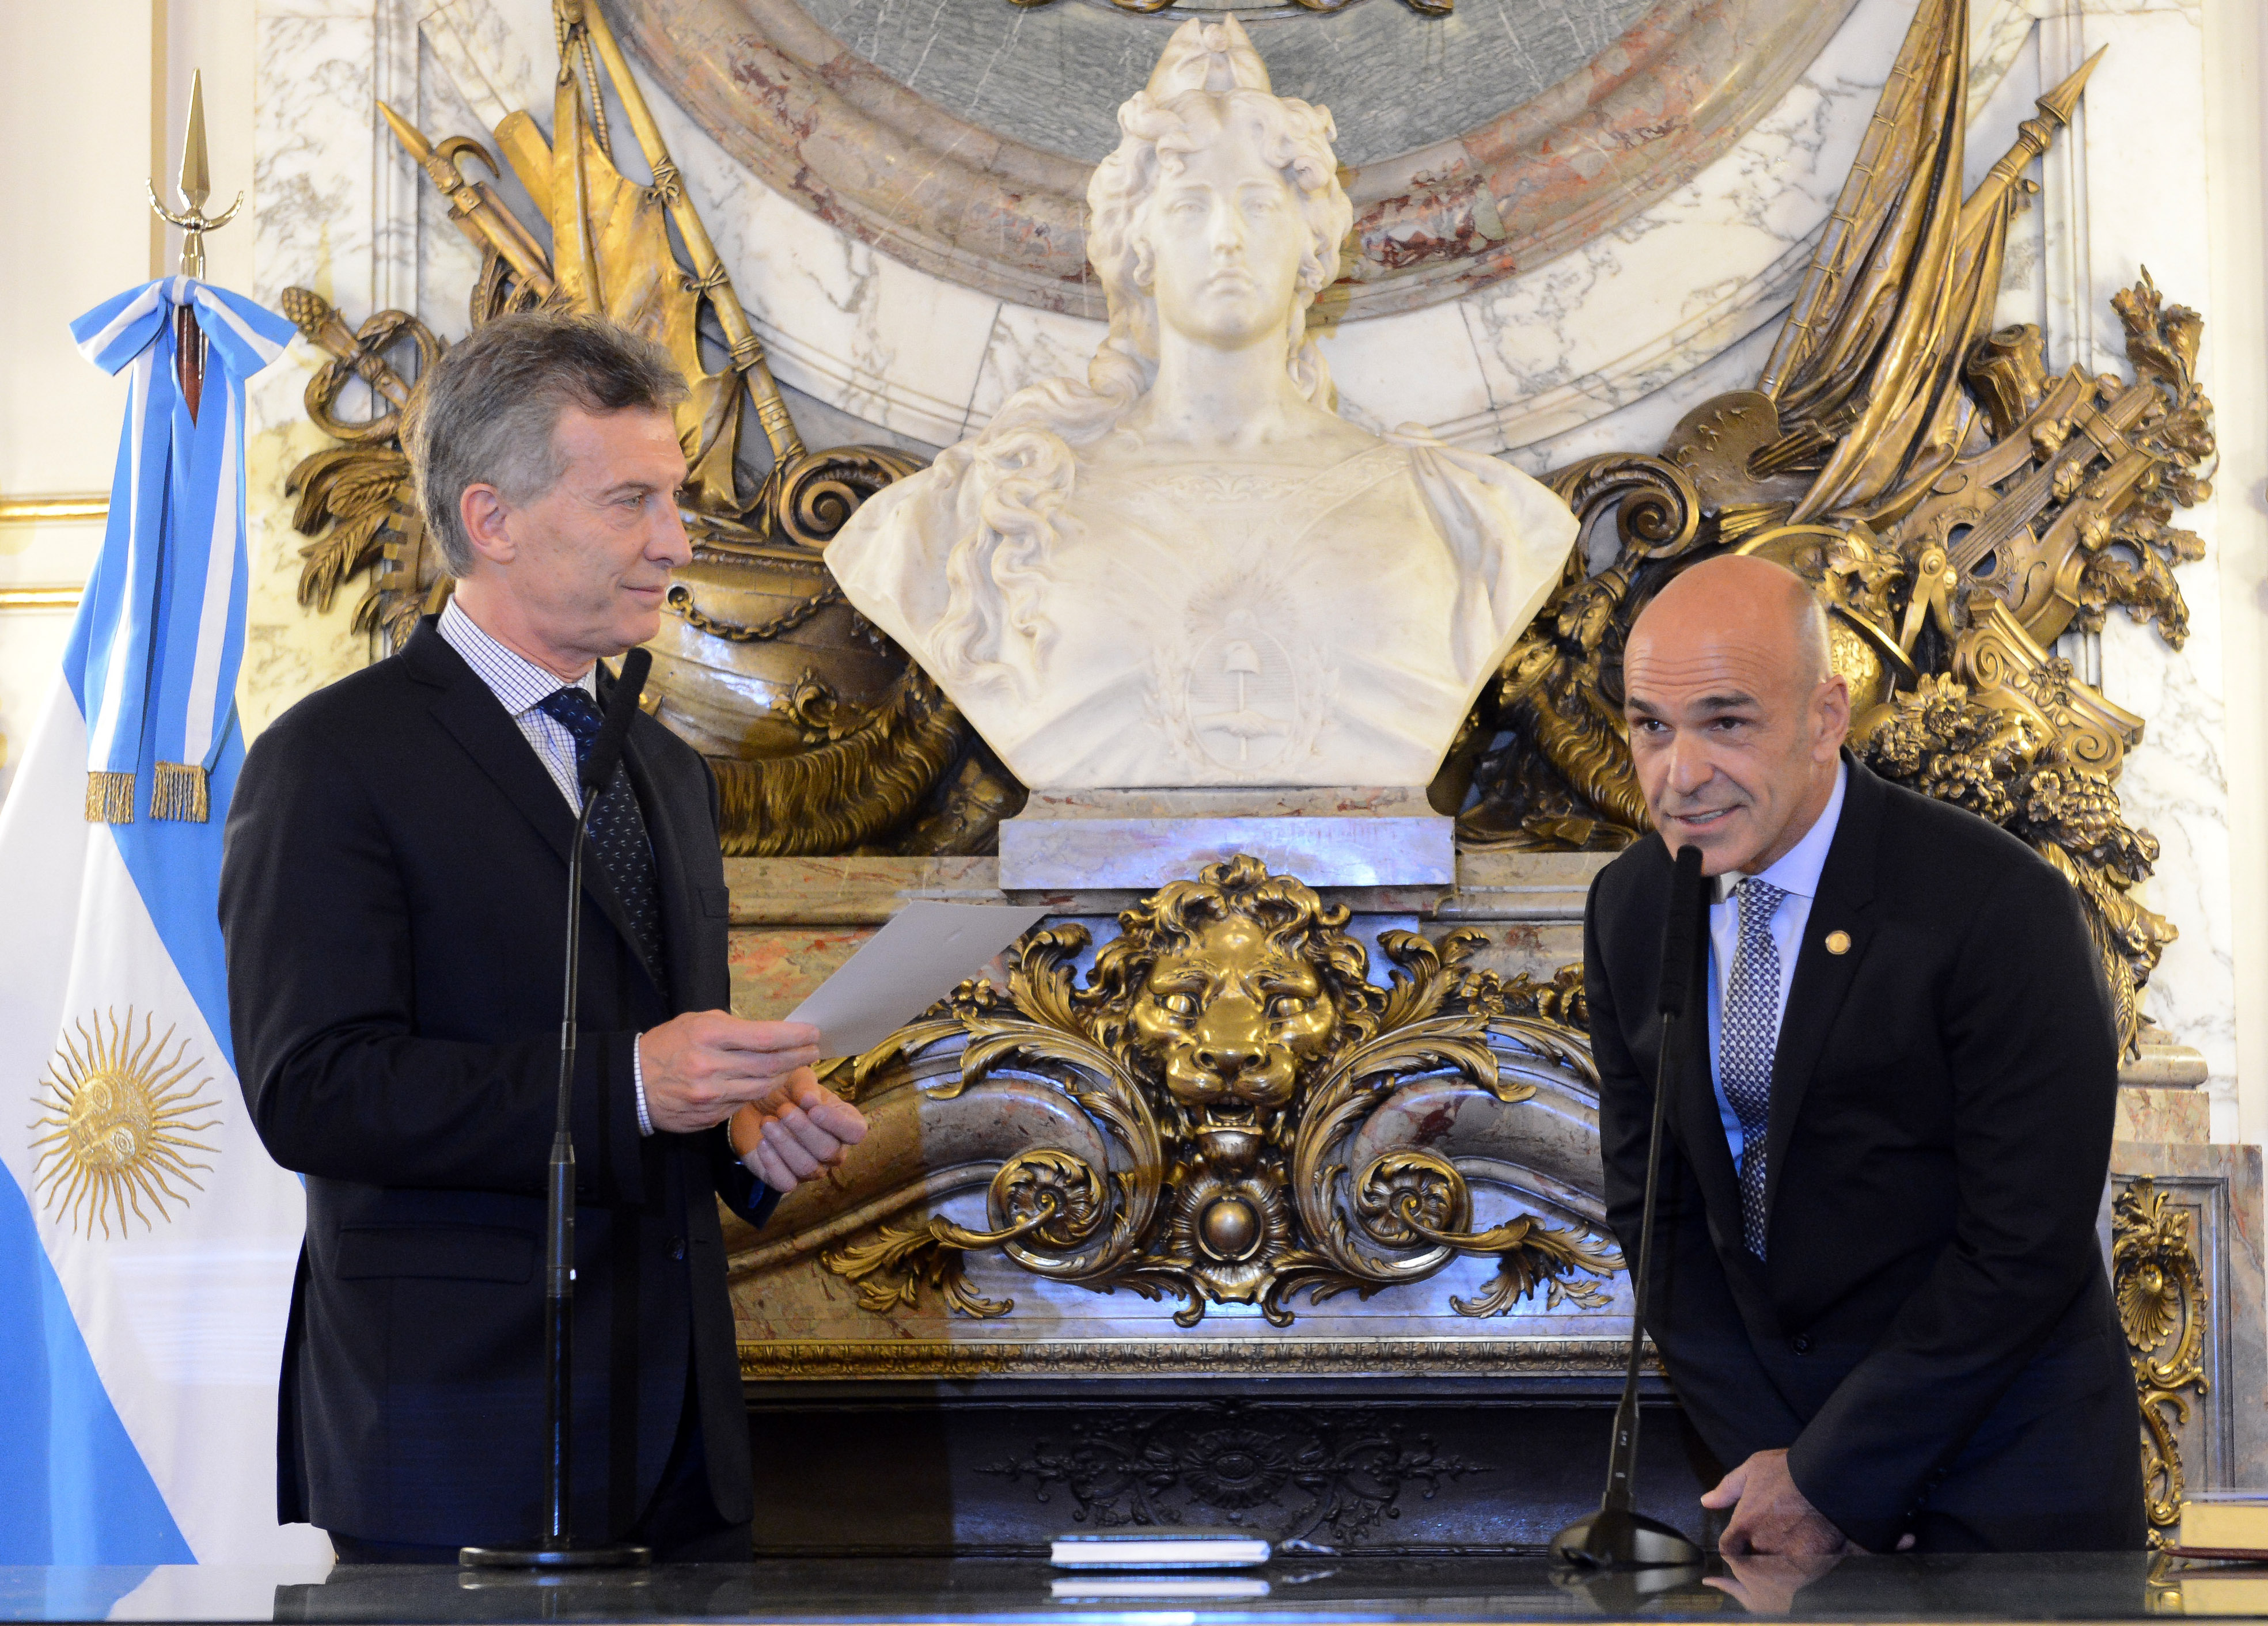 El presidente Macri tomó juramento al titular de la Agencia Federal de Inteligencia